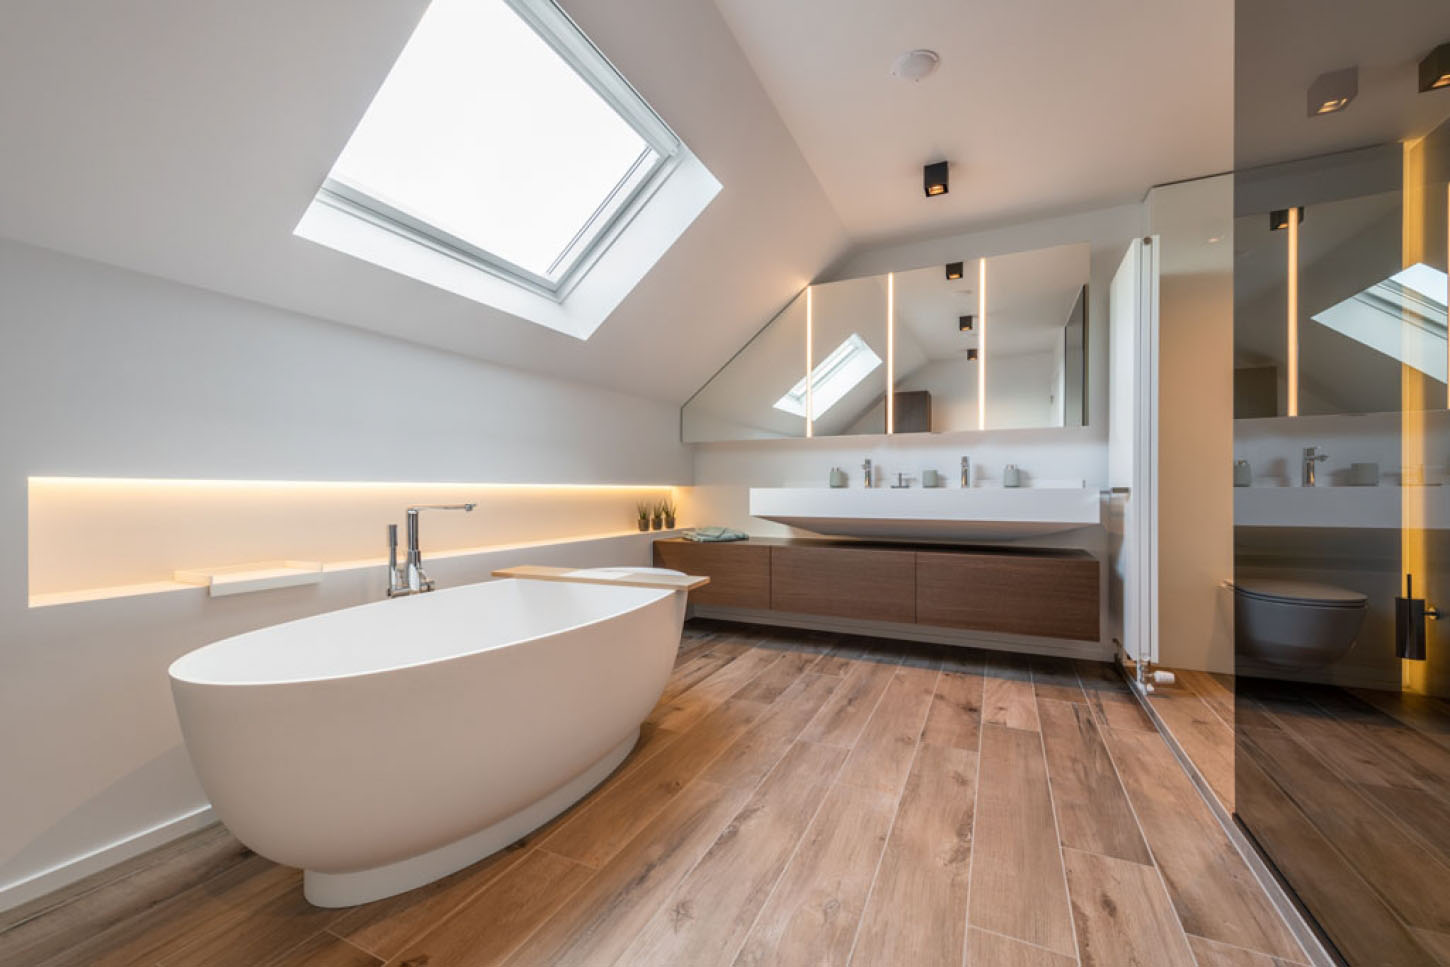 Kies je voor de begeleiding van een interieurarchitect op weg naar jouw ideale badkamer? 